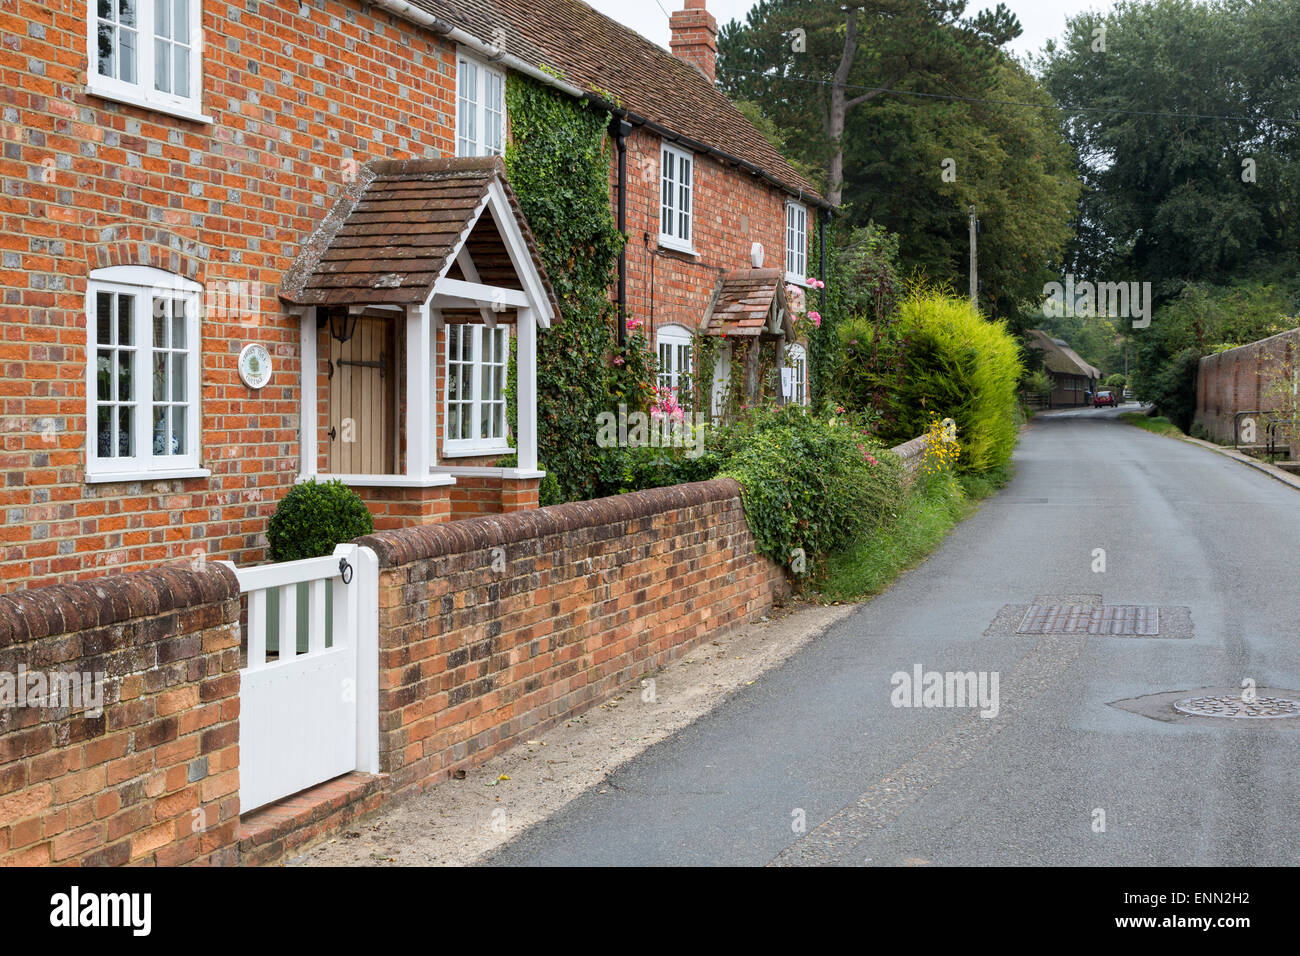 Regno Unito, Inghilterra, Ewelme. Vicolo tranquillo in un piccolo villaggio inglese. Foto Stock